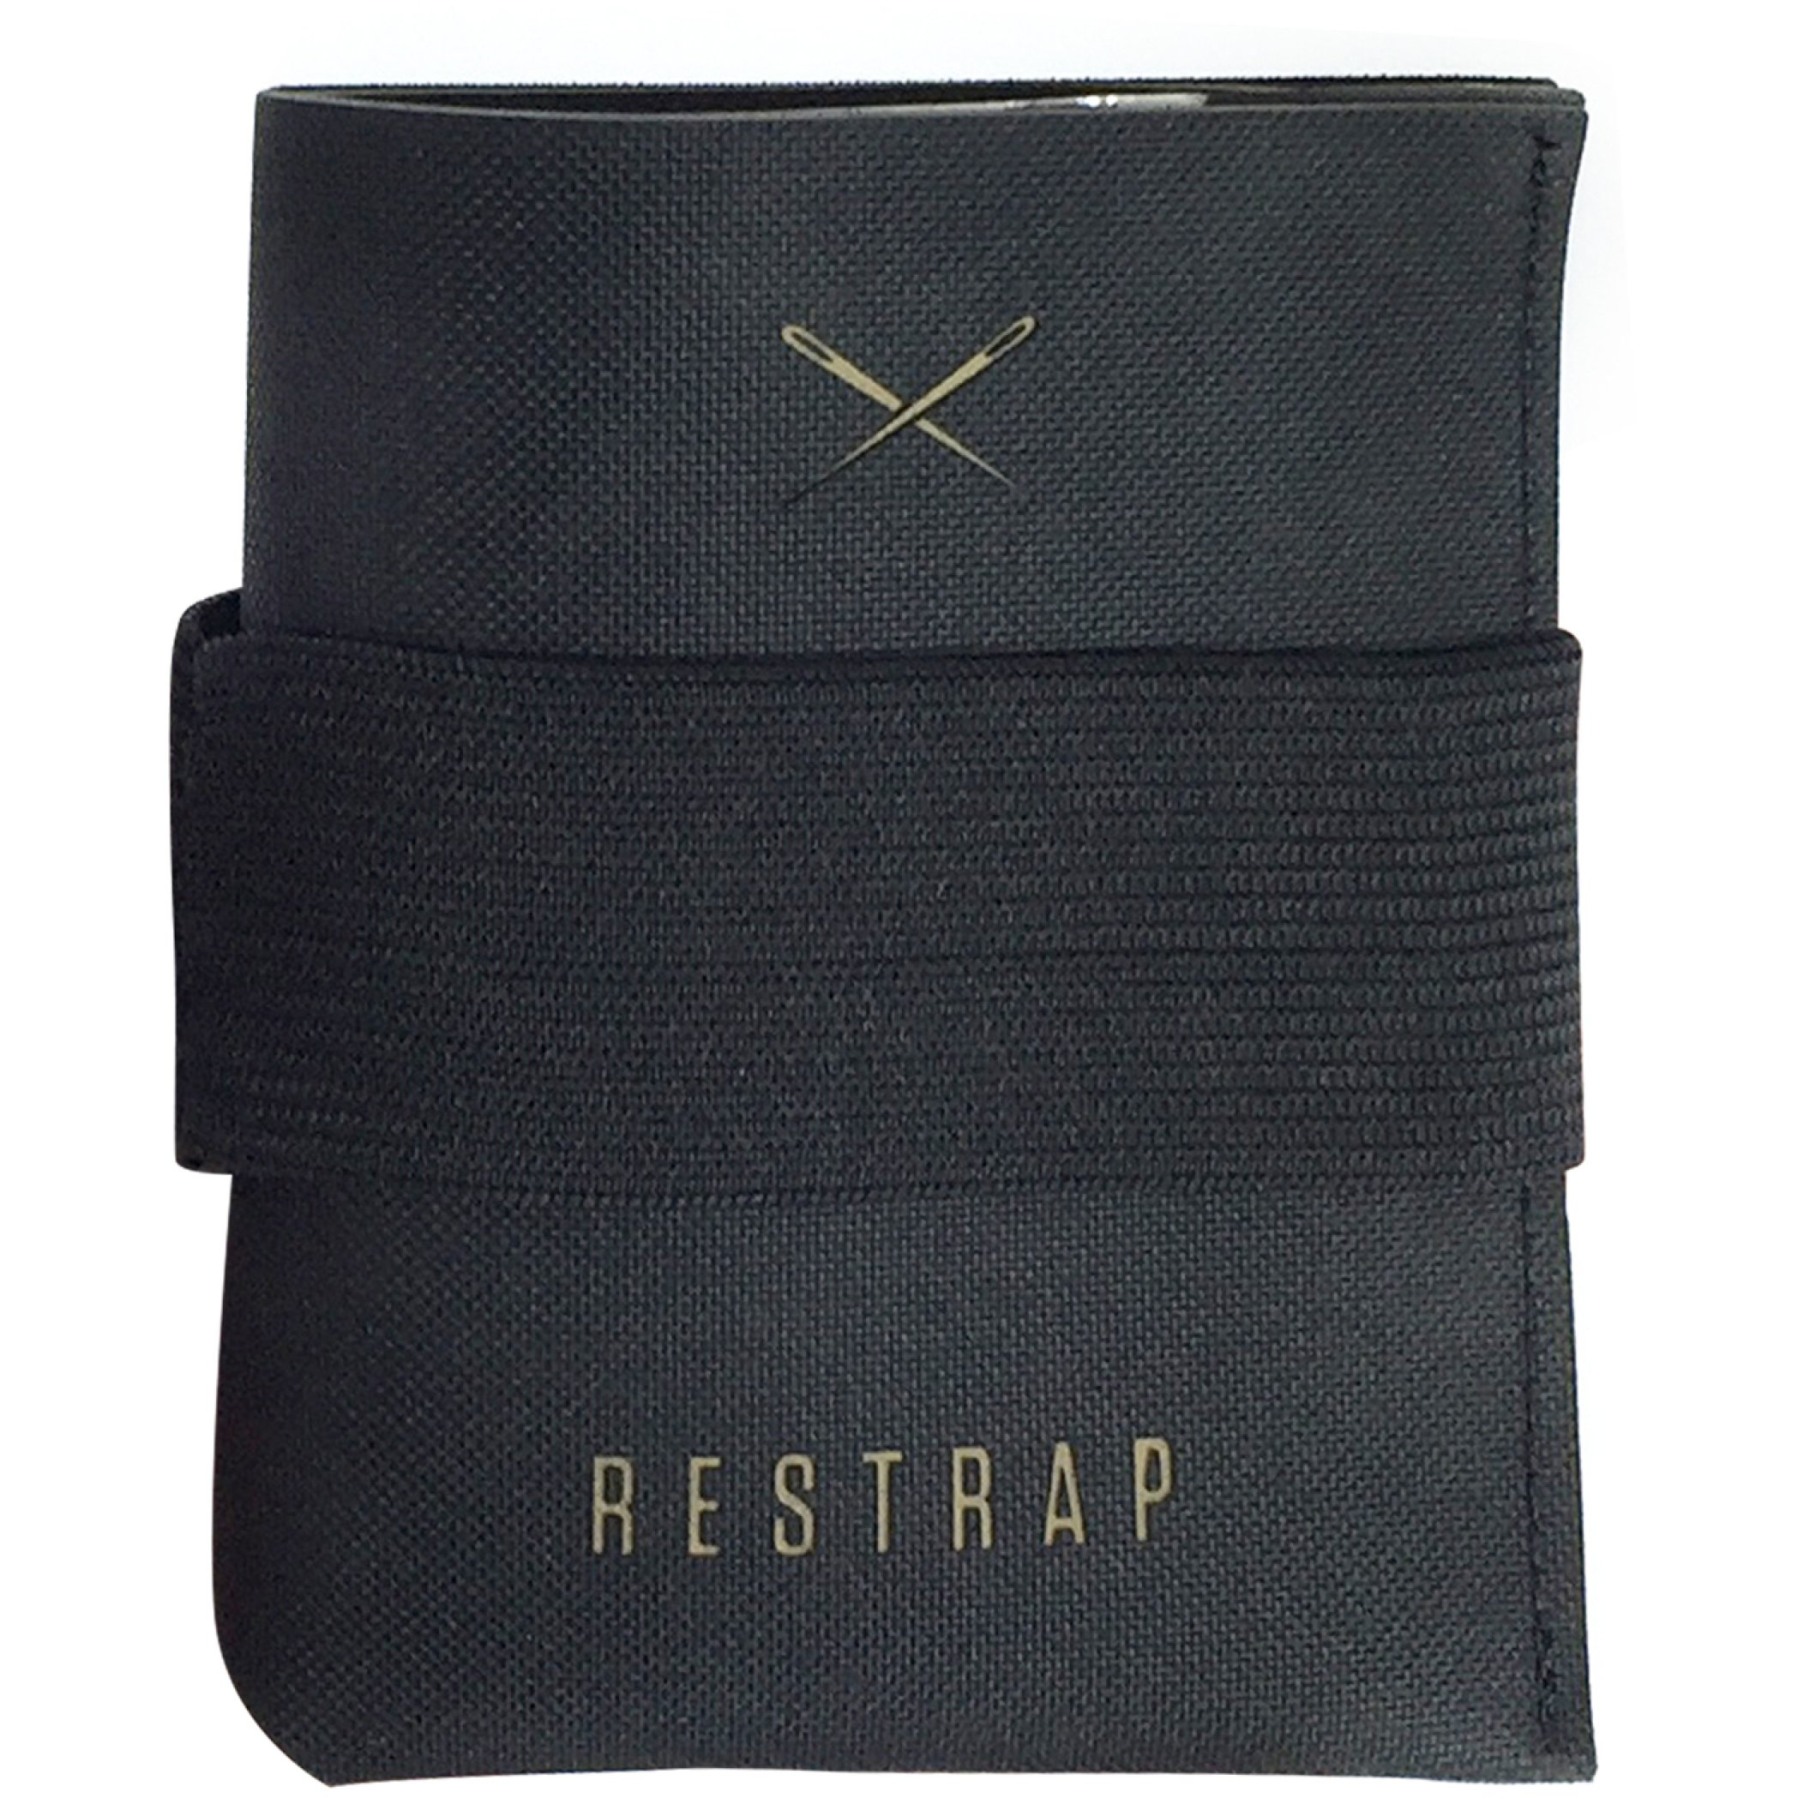 Produktbild von Restrap Wallet Geldbörse - schwarz